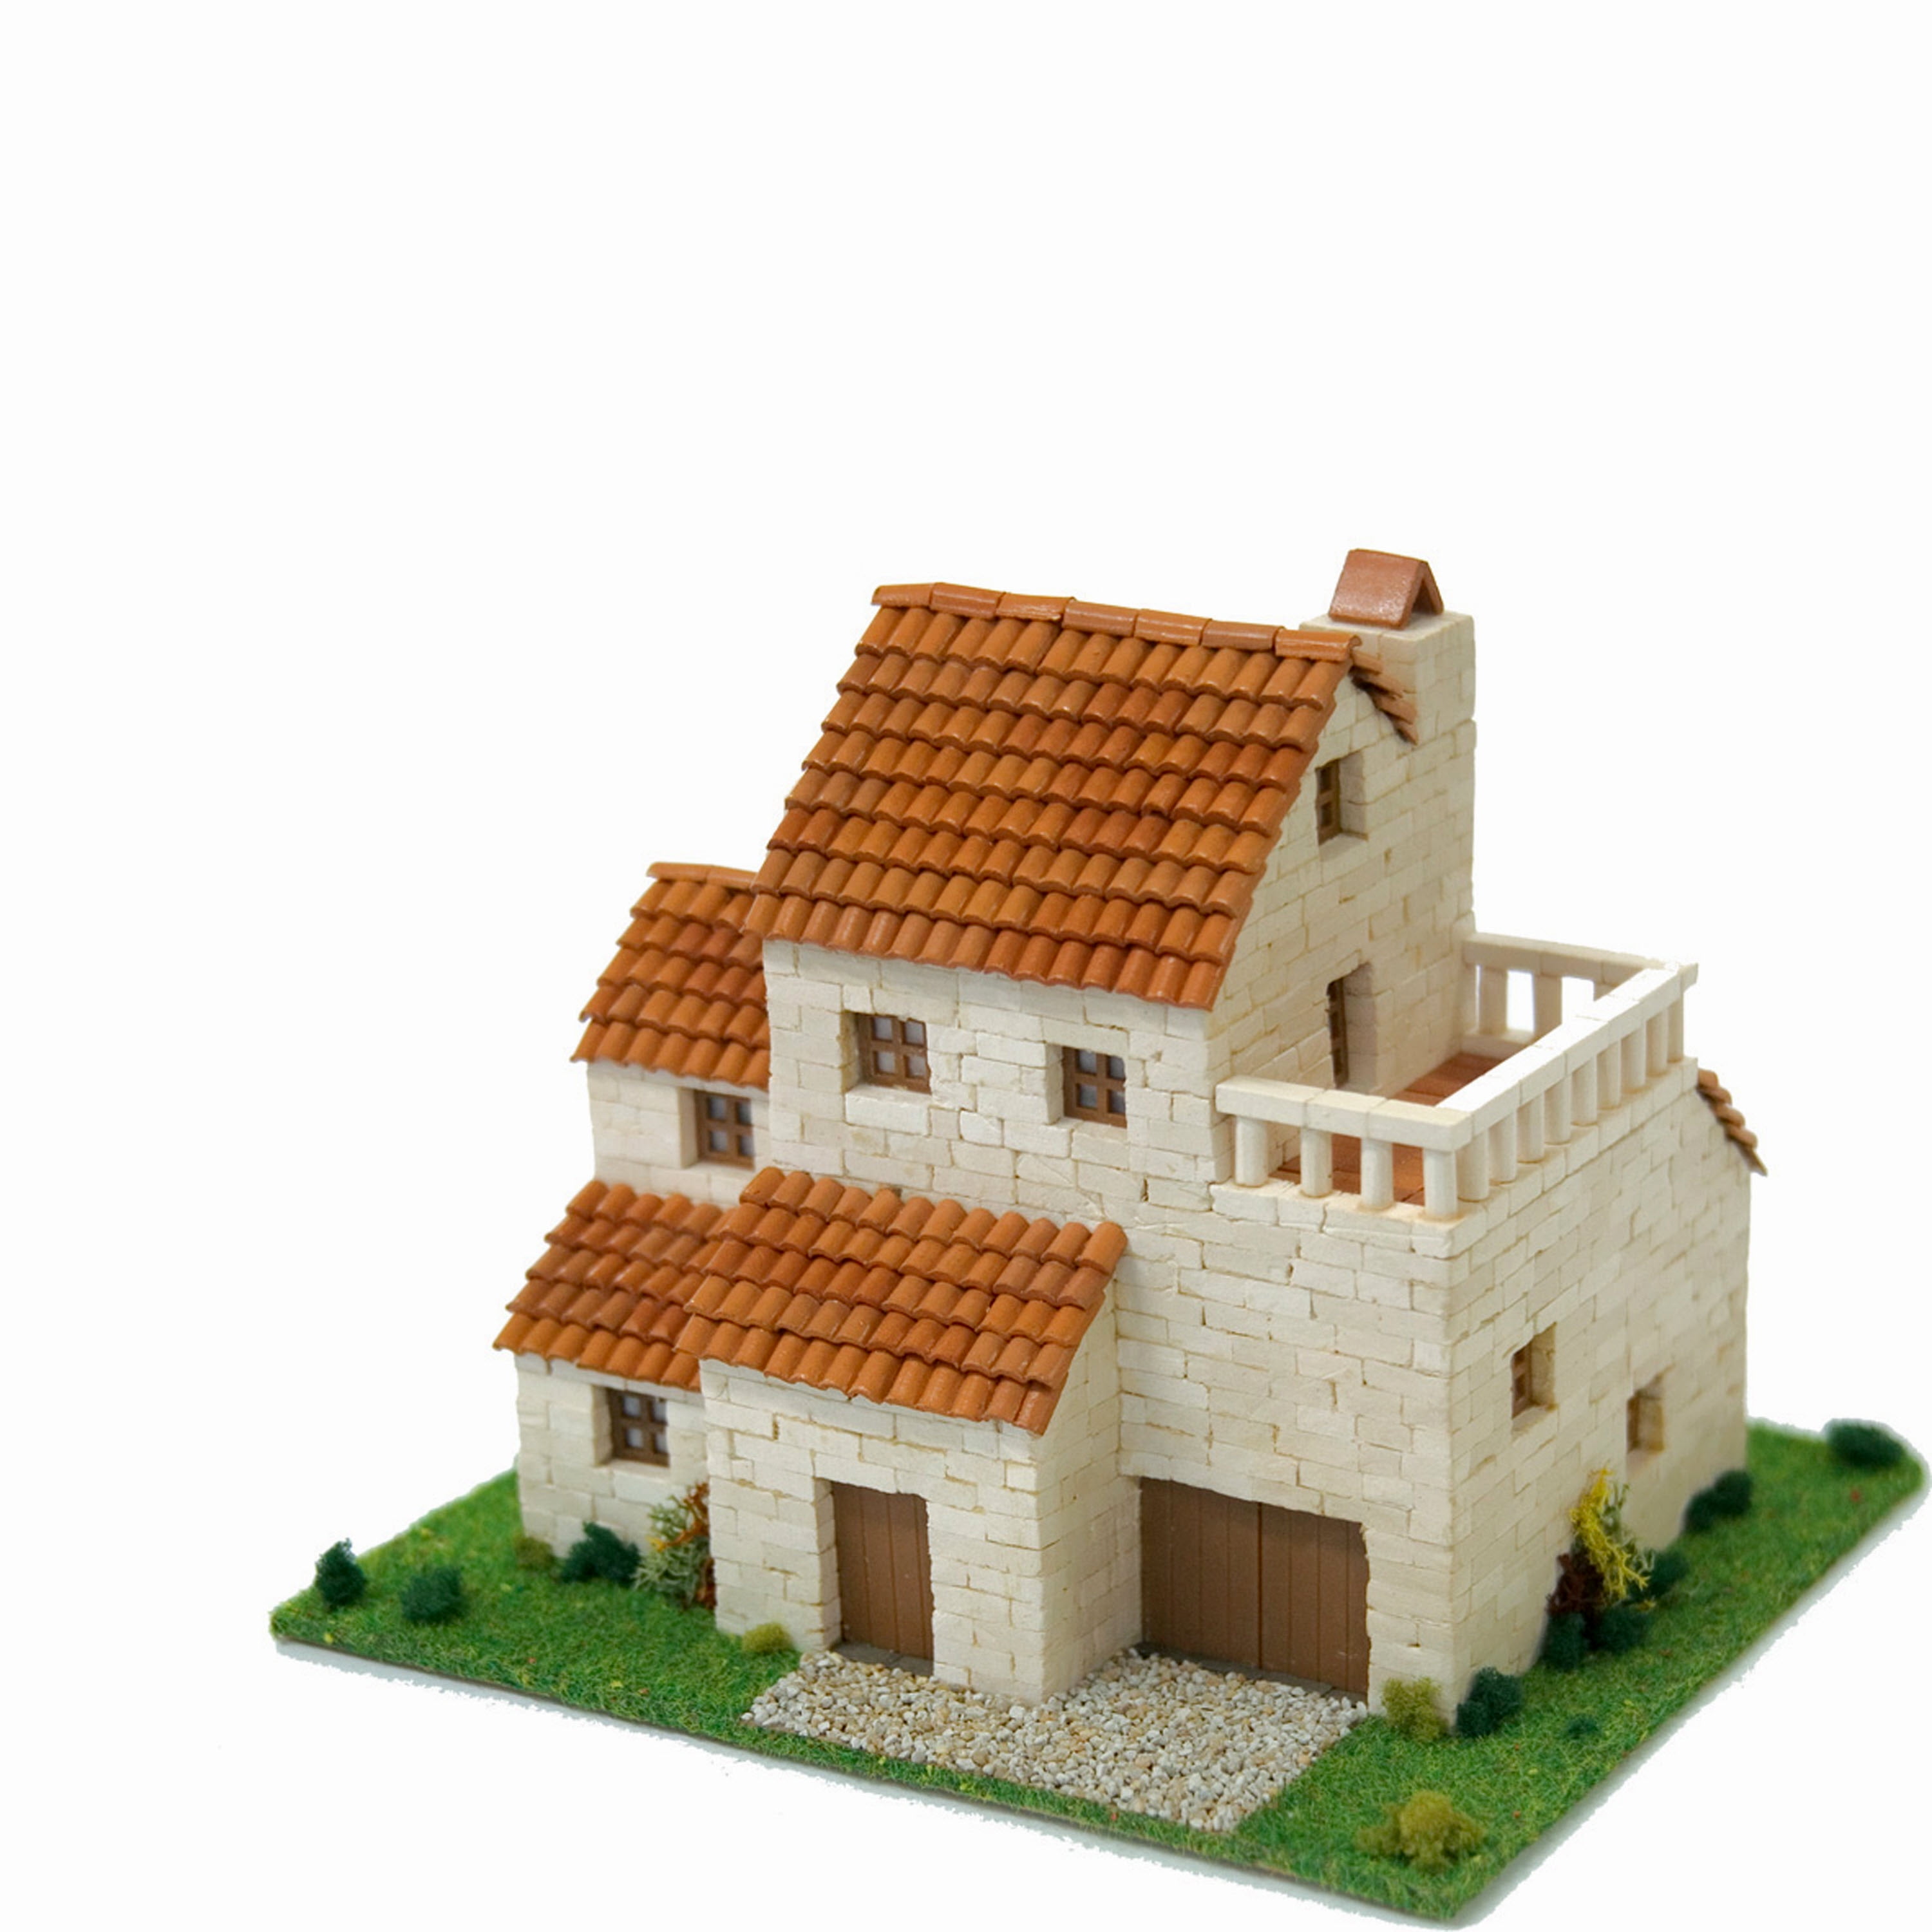 Rural House 3 1:87 Details about   CUIT Ceramic Building Construction Kit